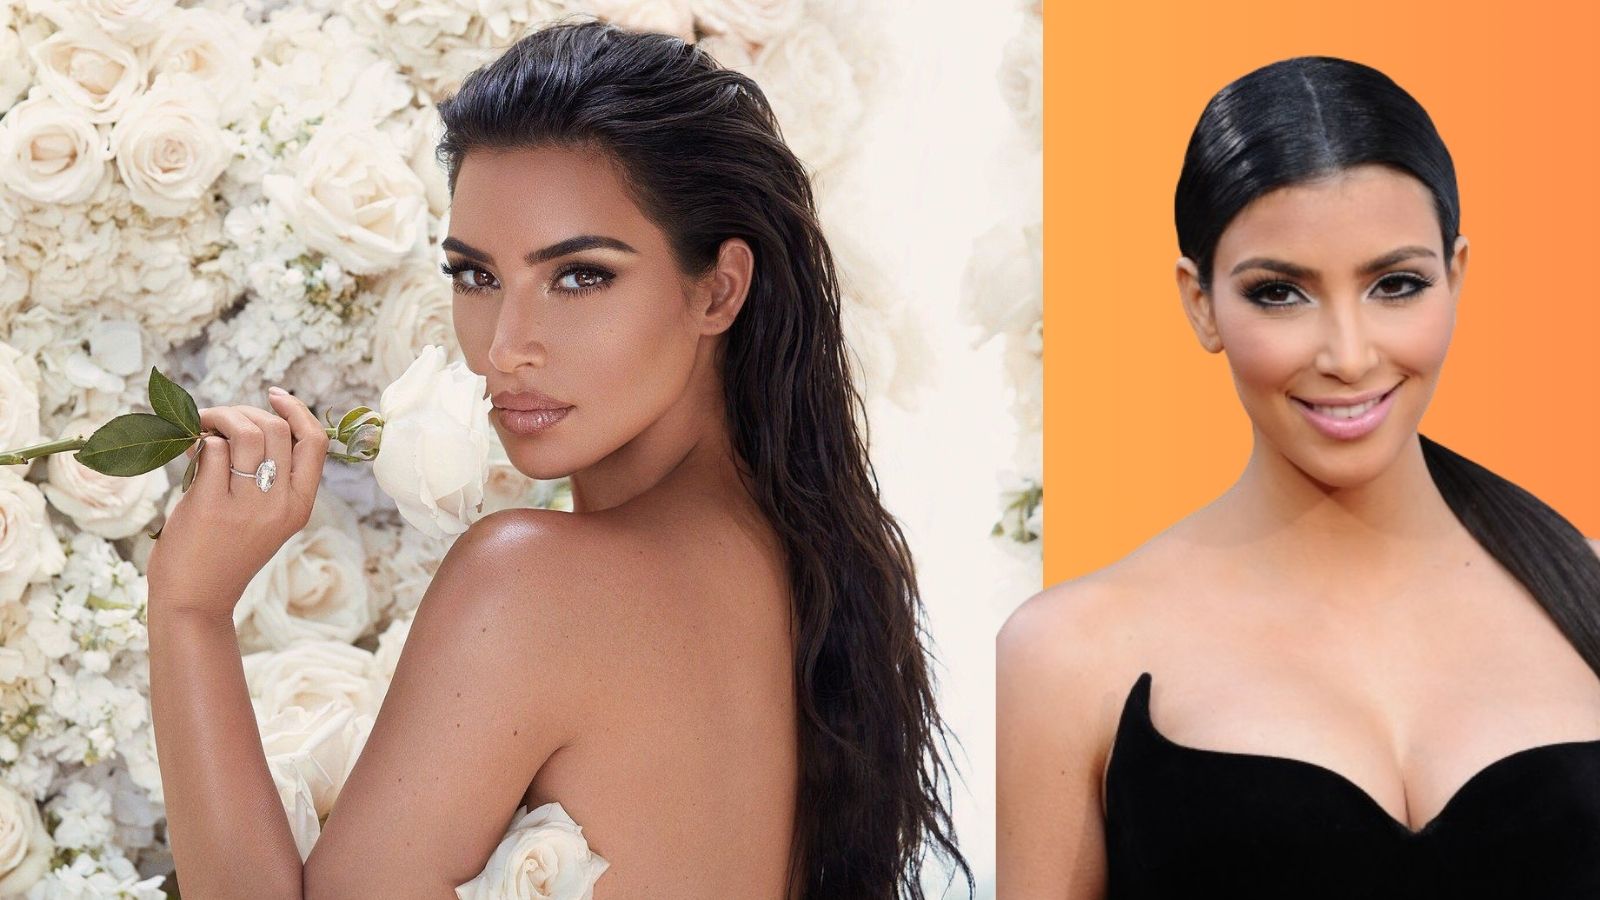 Reality şov yıldızı olan Kim Kardashian'dan boşanmasının ardından sürpriz bir şekilde Bianca Censori ile evlenen Kanye West, eşinin 'uygunsuz' tarzıyla sık sık gündeme geliyor.